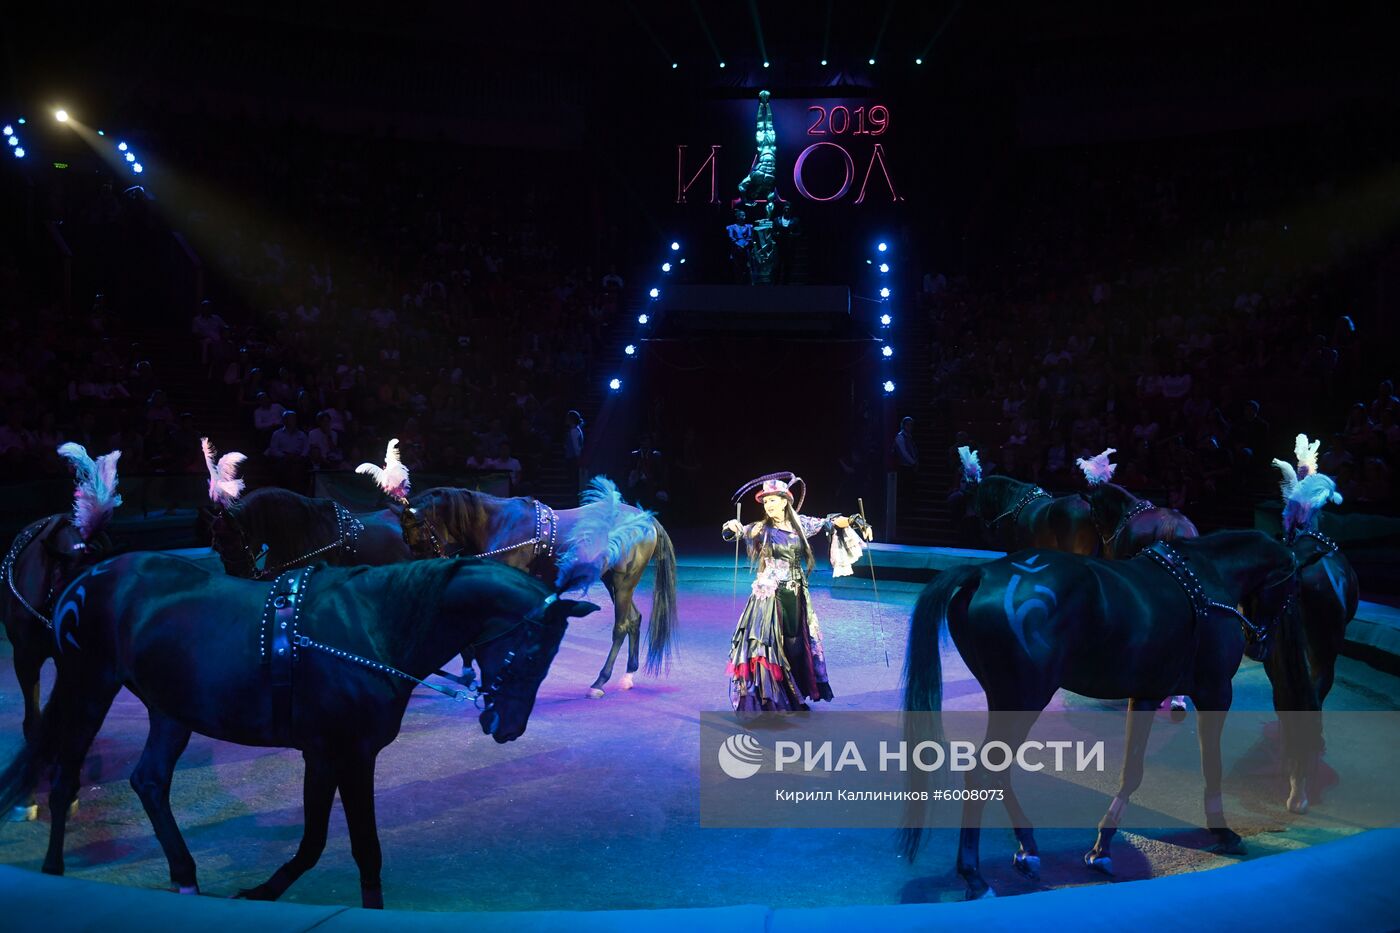 Открытие всемирного фестиваля циркового искусства "Идол"